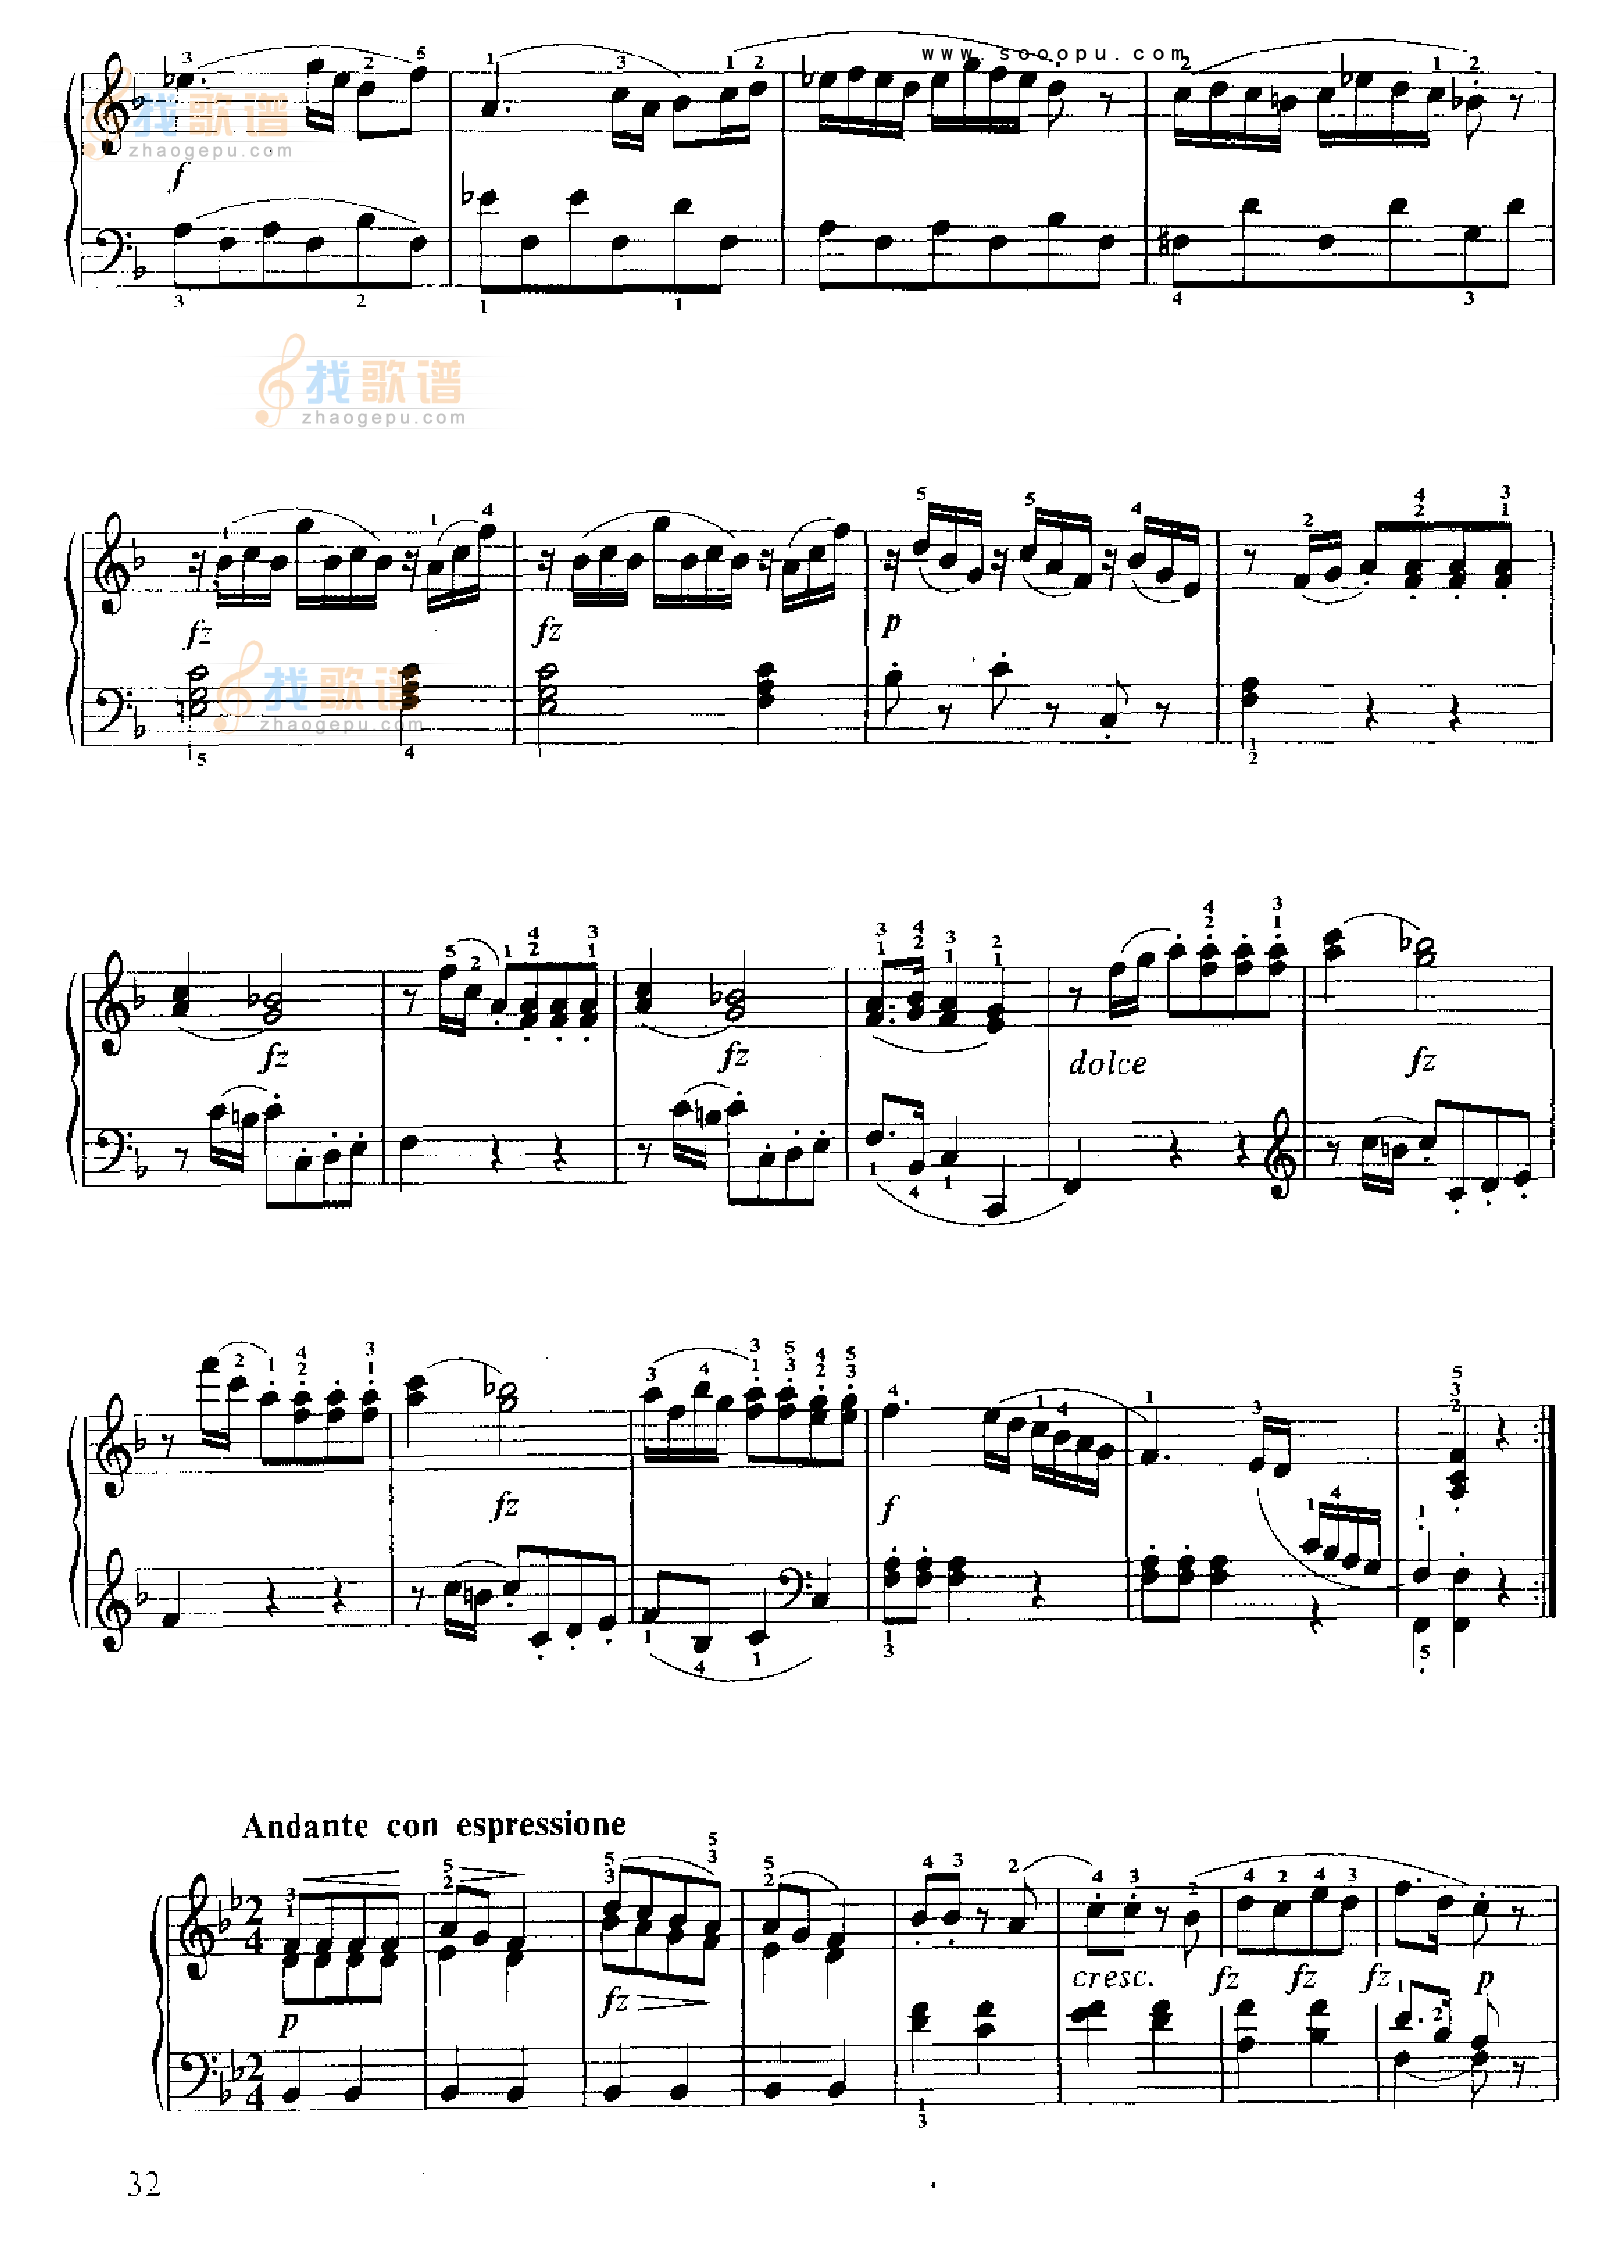 月光奏鸣曲》第一乐章-musicfish版,钢琴谱》贝多芬-beethoven|弹琴吧|钢琴谱|吉他谱|钢琴曲|乐谱|五线谱|高清免费下载|蛐蛐钢琴网